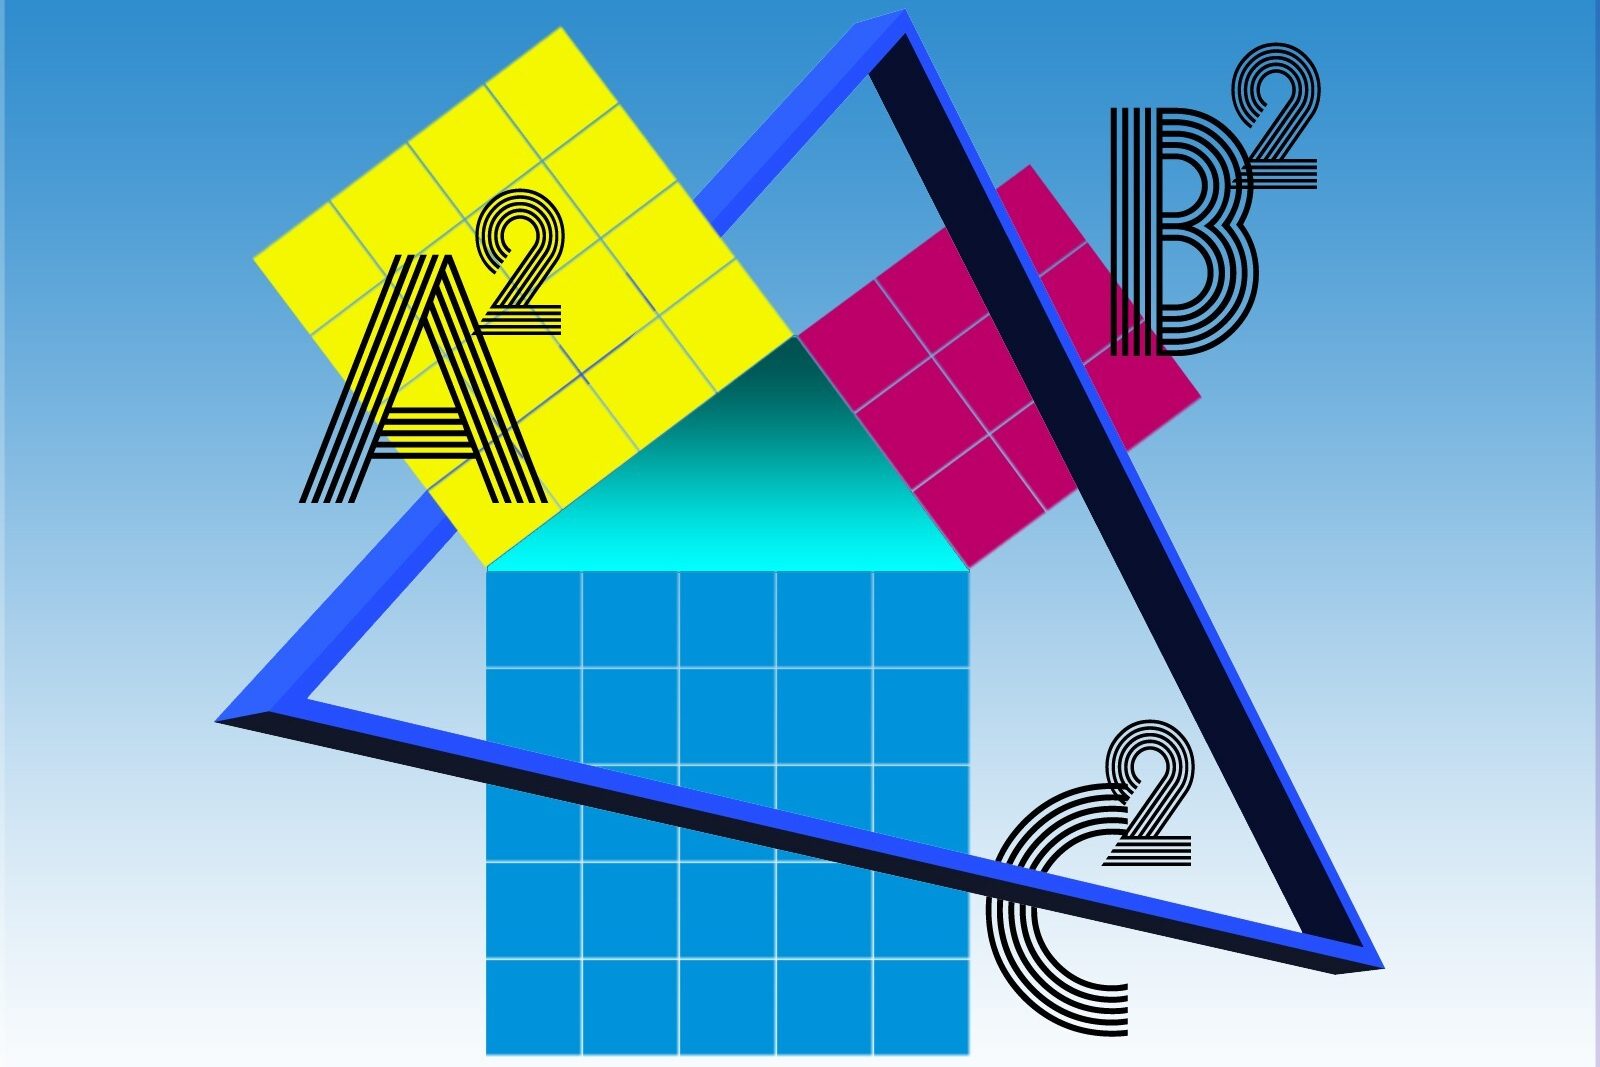 Darstellung des Satz des Pythagoras: a2 + b2 = c2